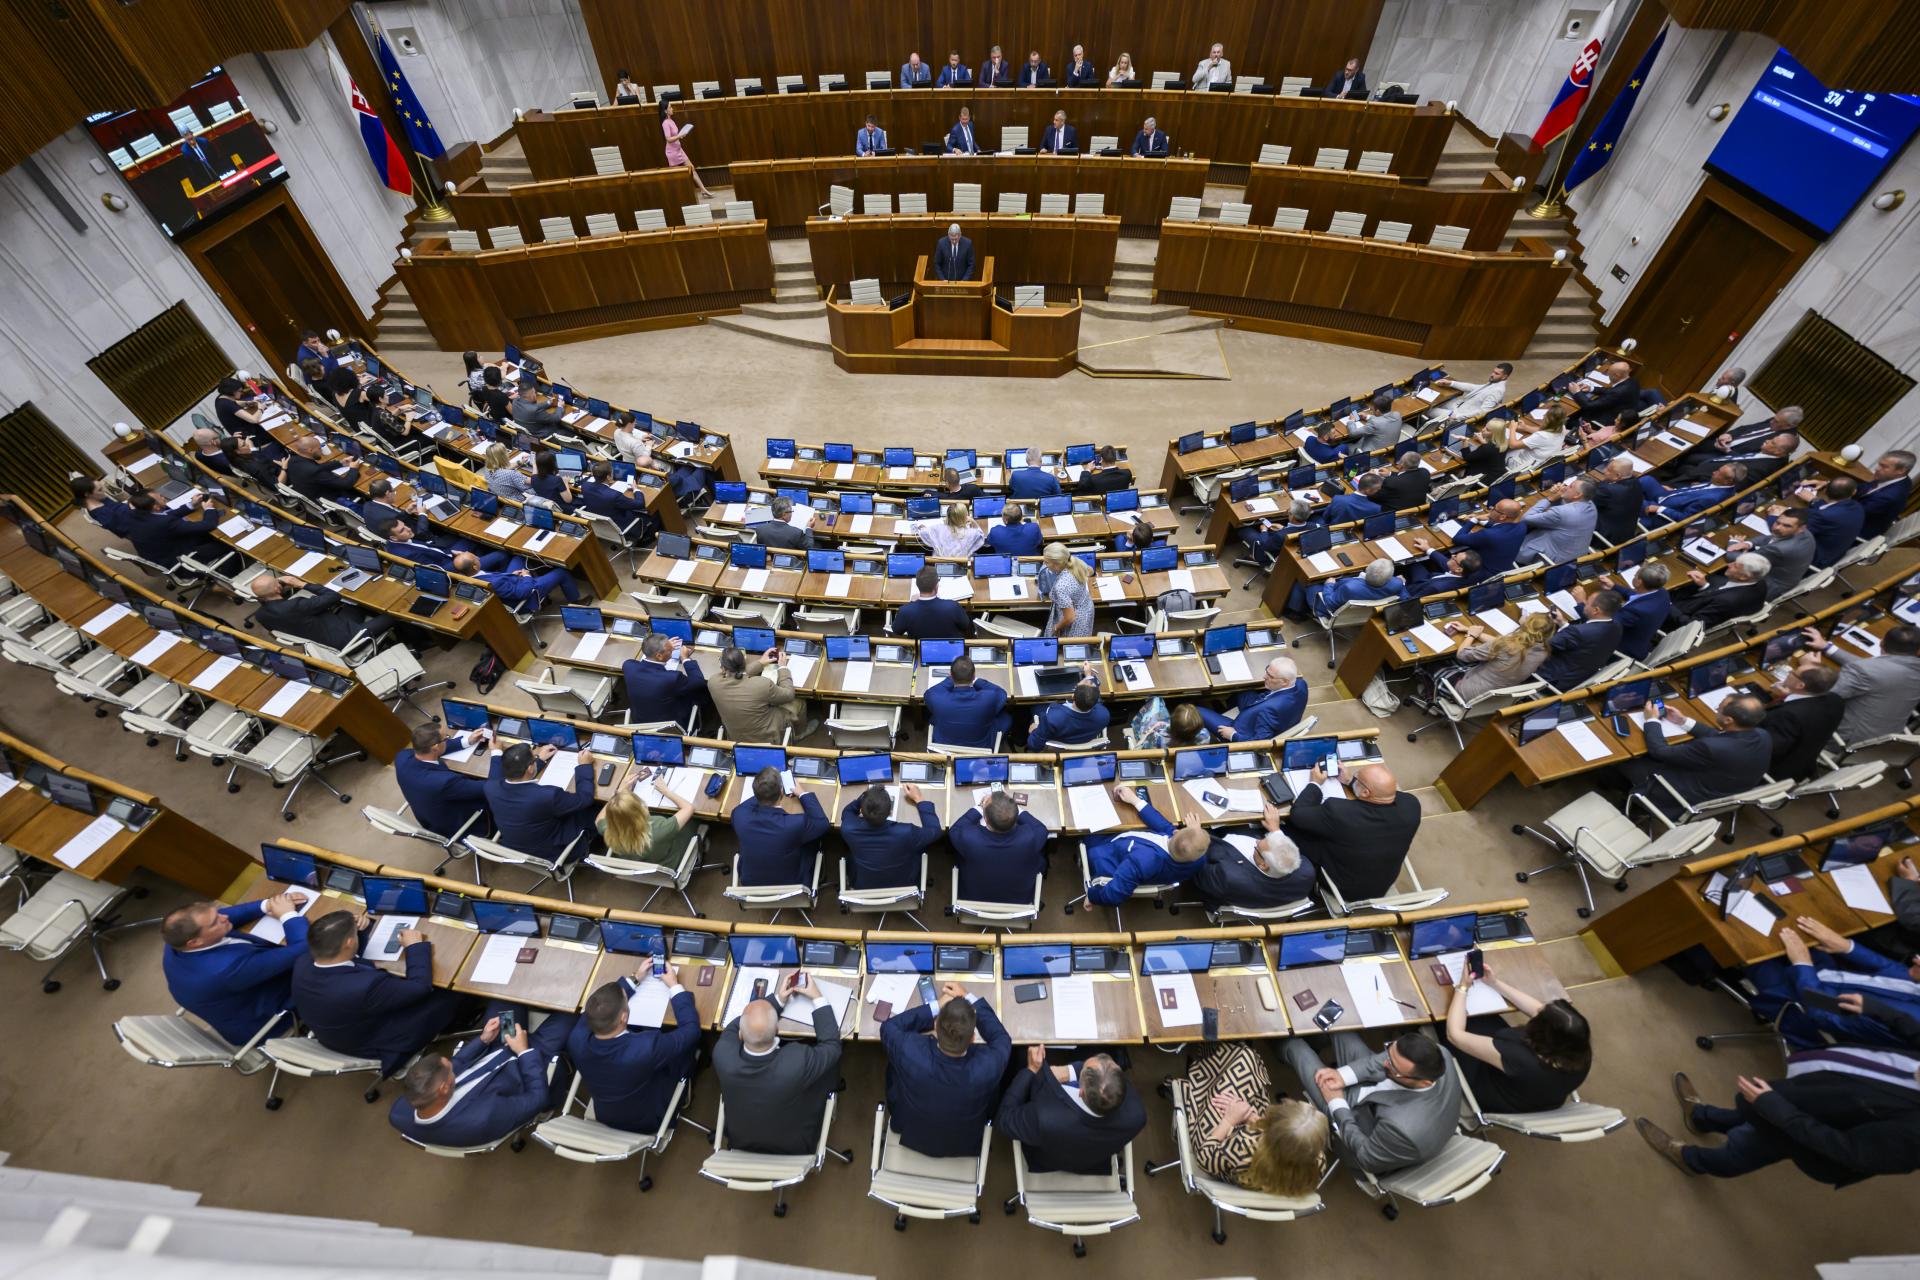 Progresívne Slovensko chce otvoriť diskusiu o zmenách v rokovacom poriadku. Počká však na návrhy koalície